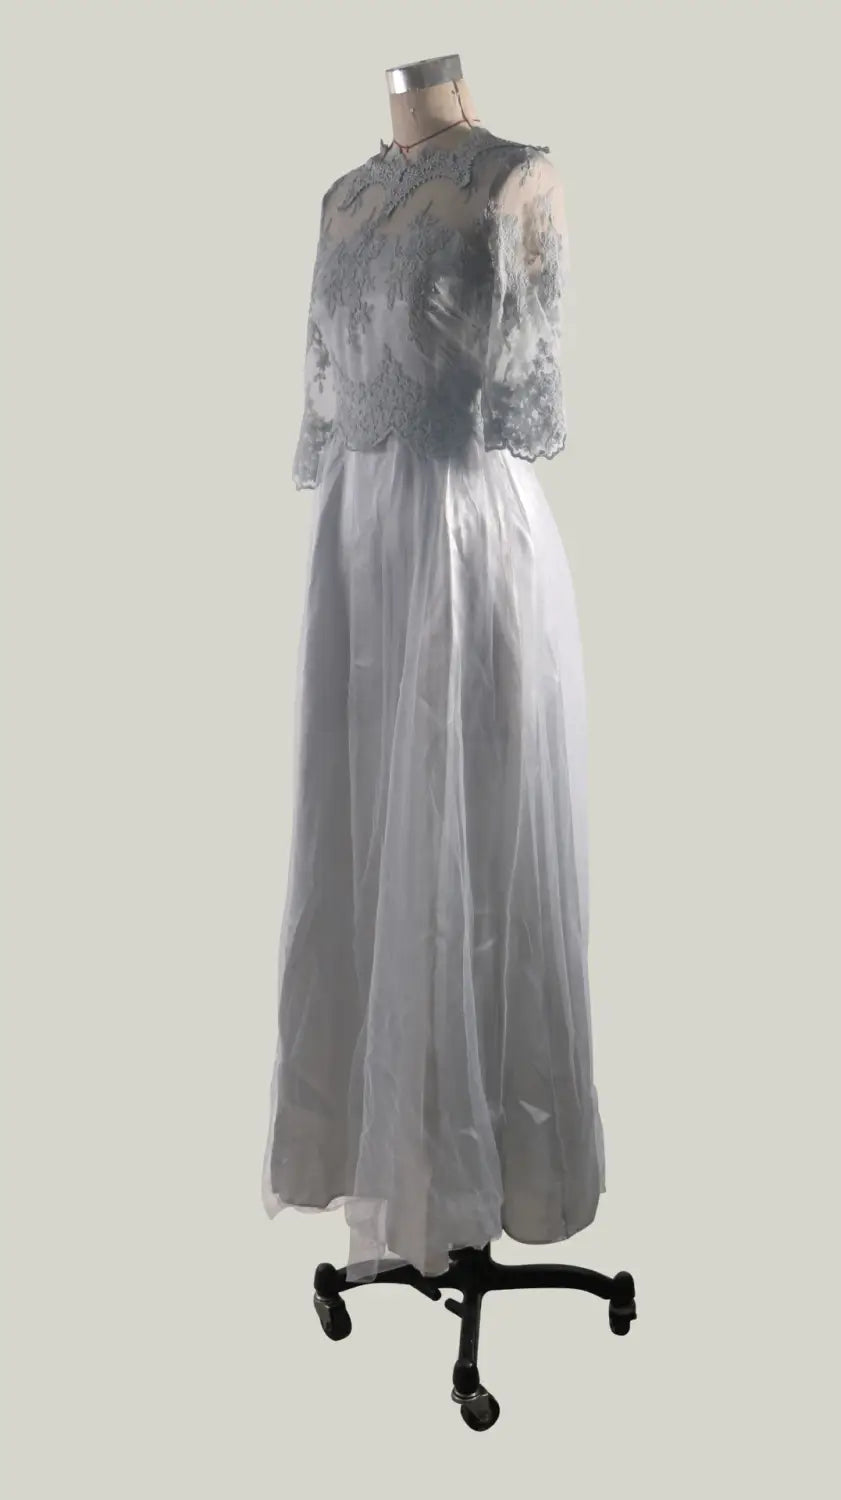 Lovemi - Robe de Soirée Élégante pour Dames Mode Florale